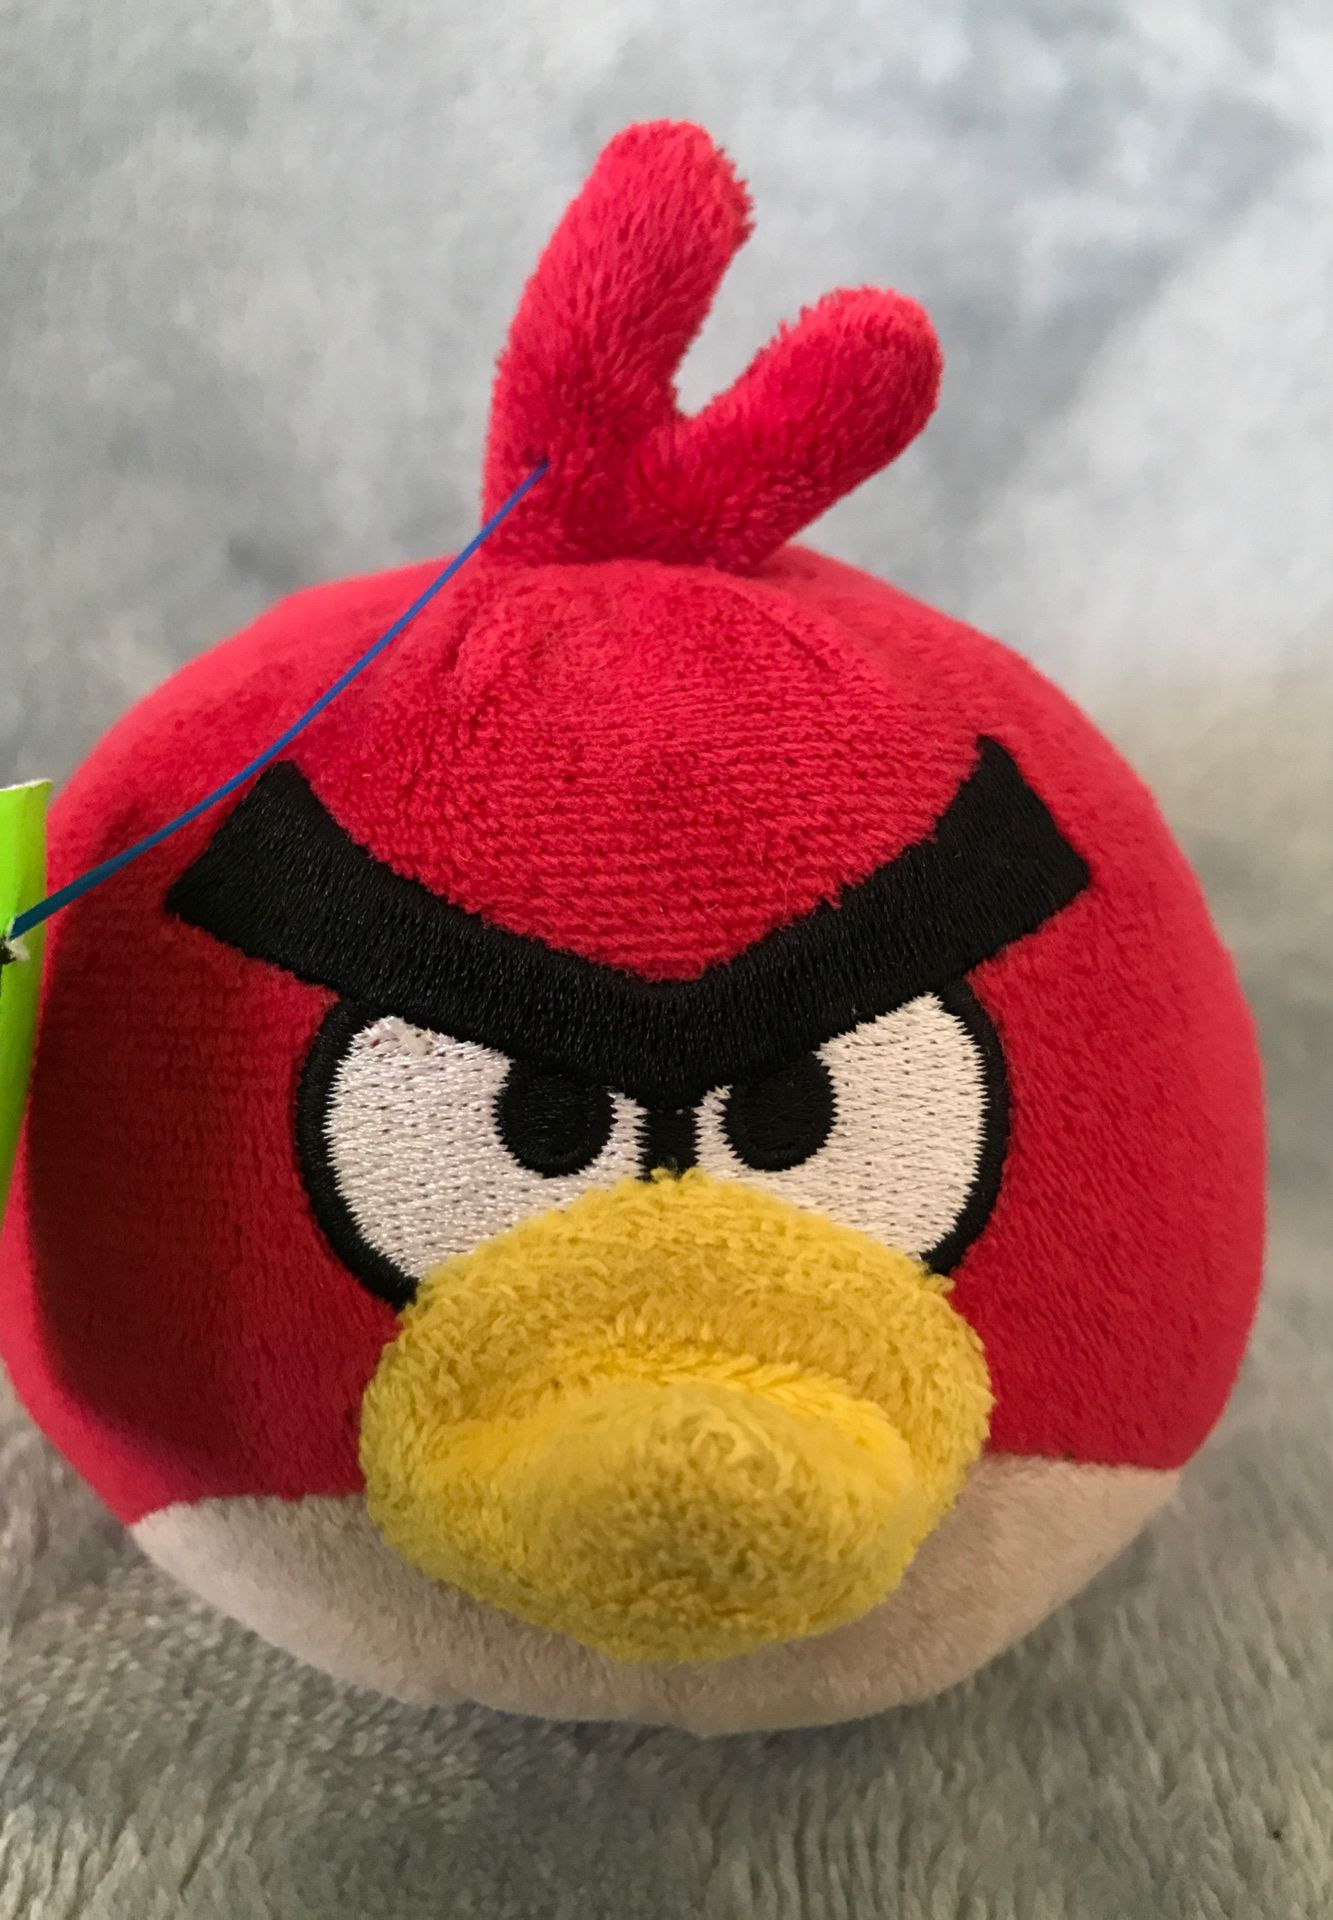 3” angry bird stuffed animal $2